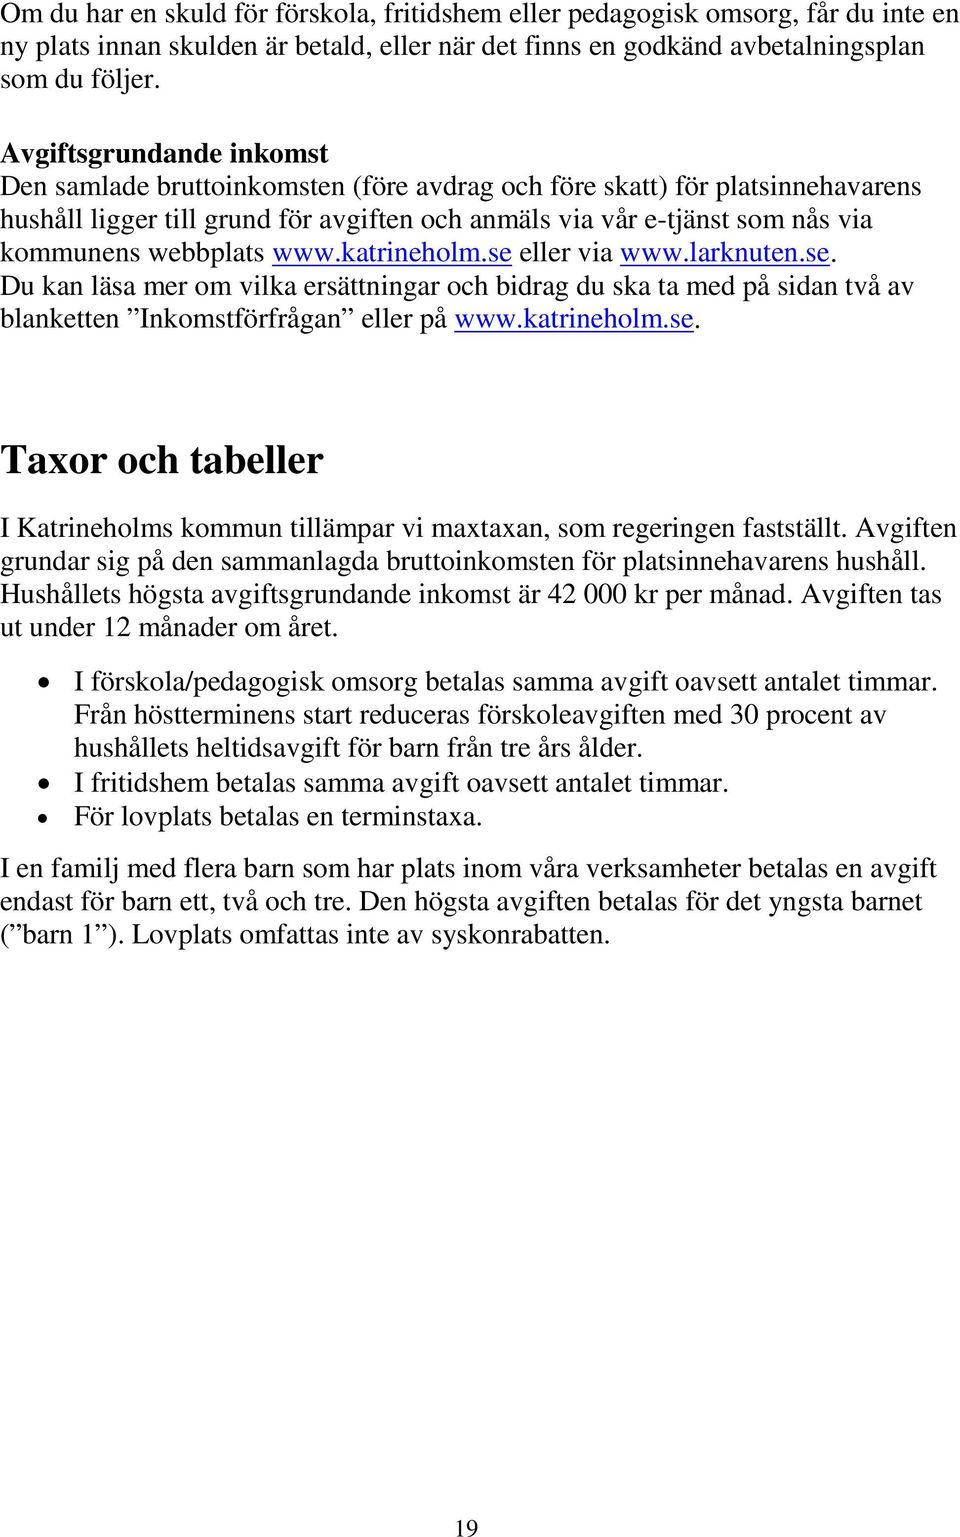 webbplats www.katrineholm.se eller via www.larknuten.se. Du kan läsa mer om vilka ersättningar och bidrag du ska ta med på sidan två av blanketten Inkomstförfrågan eller på www.katrineholm.se. Taxor och tabeller I Katrineholms kommun tillämpar vi maxtaxan, som regeringen fastställt.